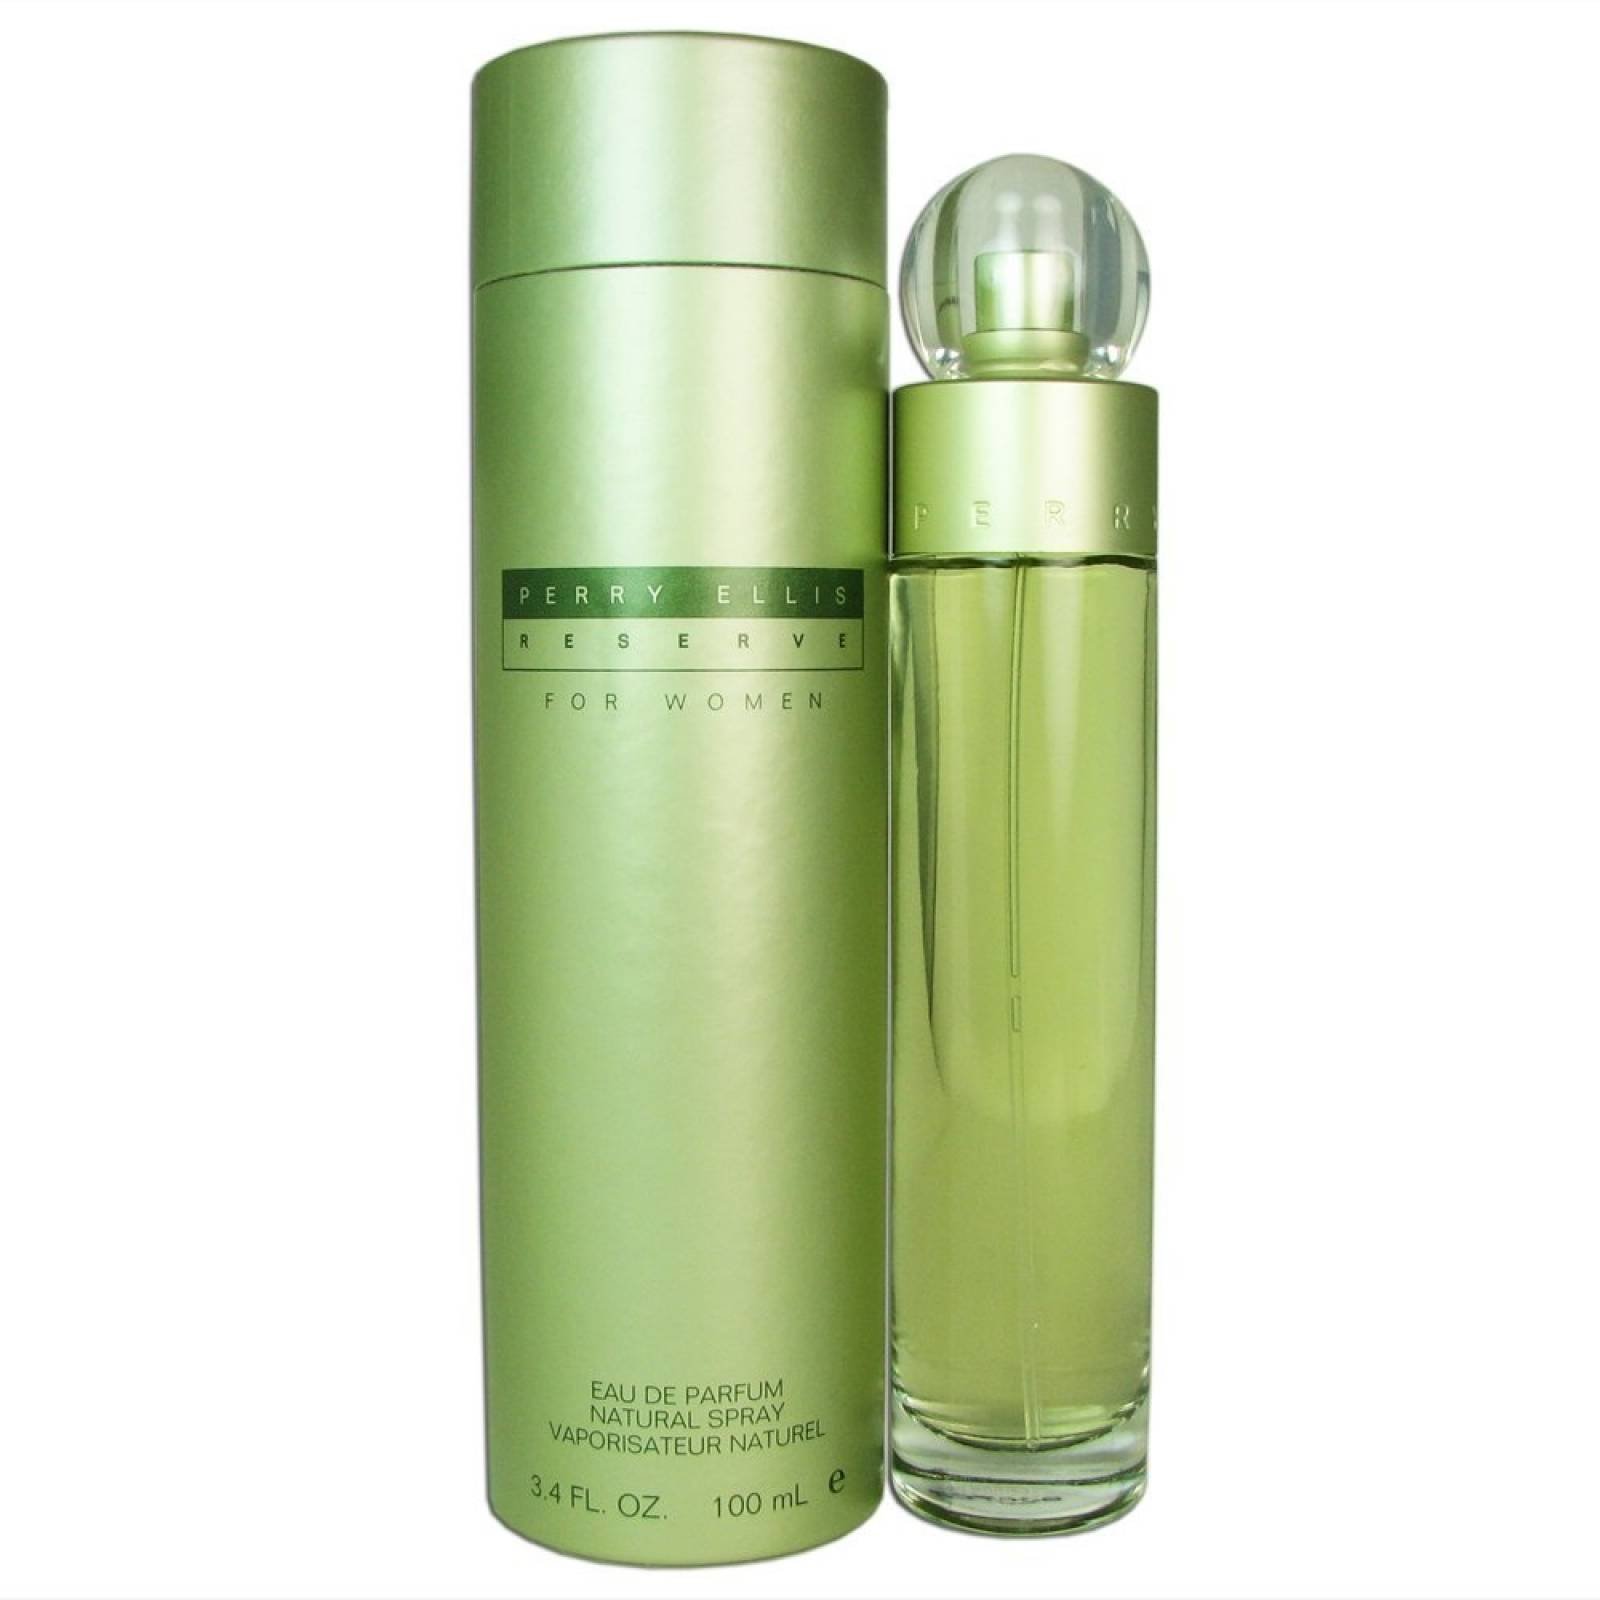 Reserve de Perry Ellis Eau De Parfum 100 ml - Fragrance untuk Wanita